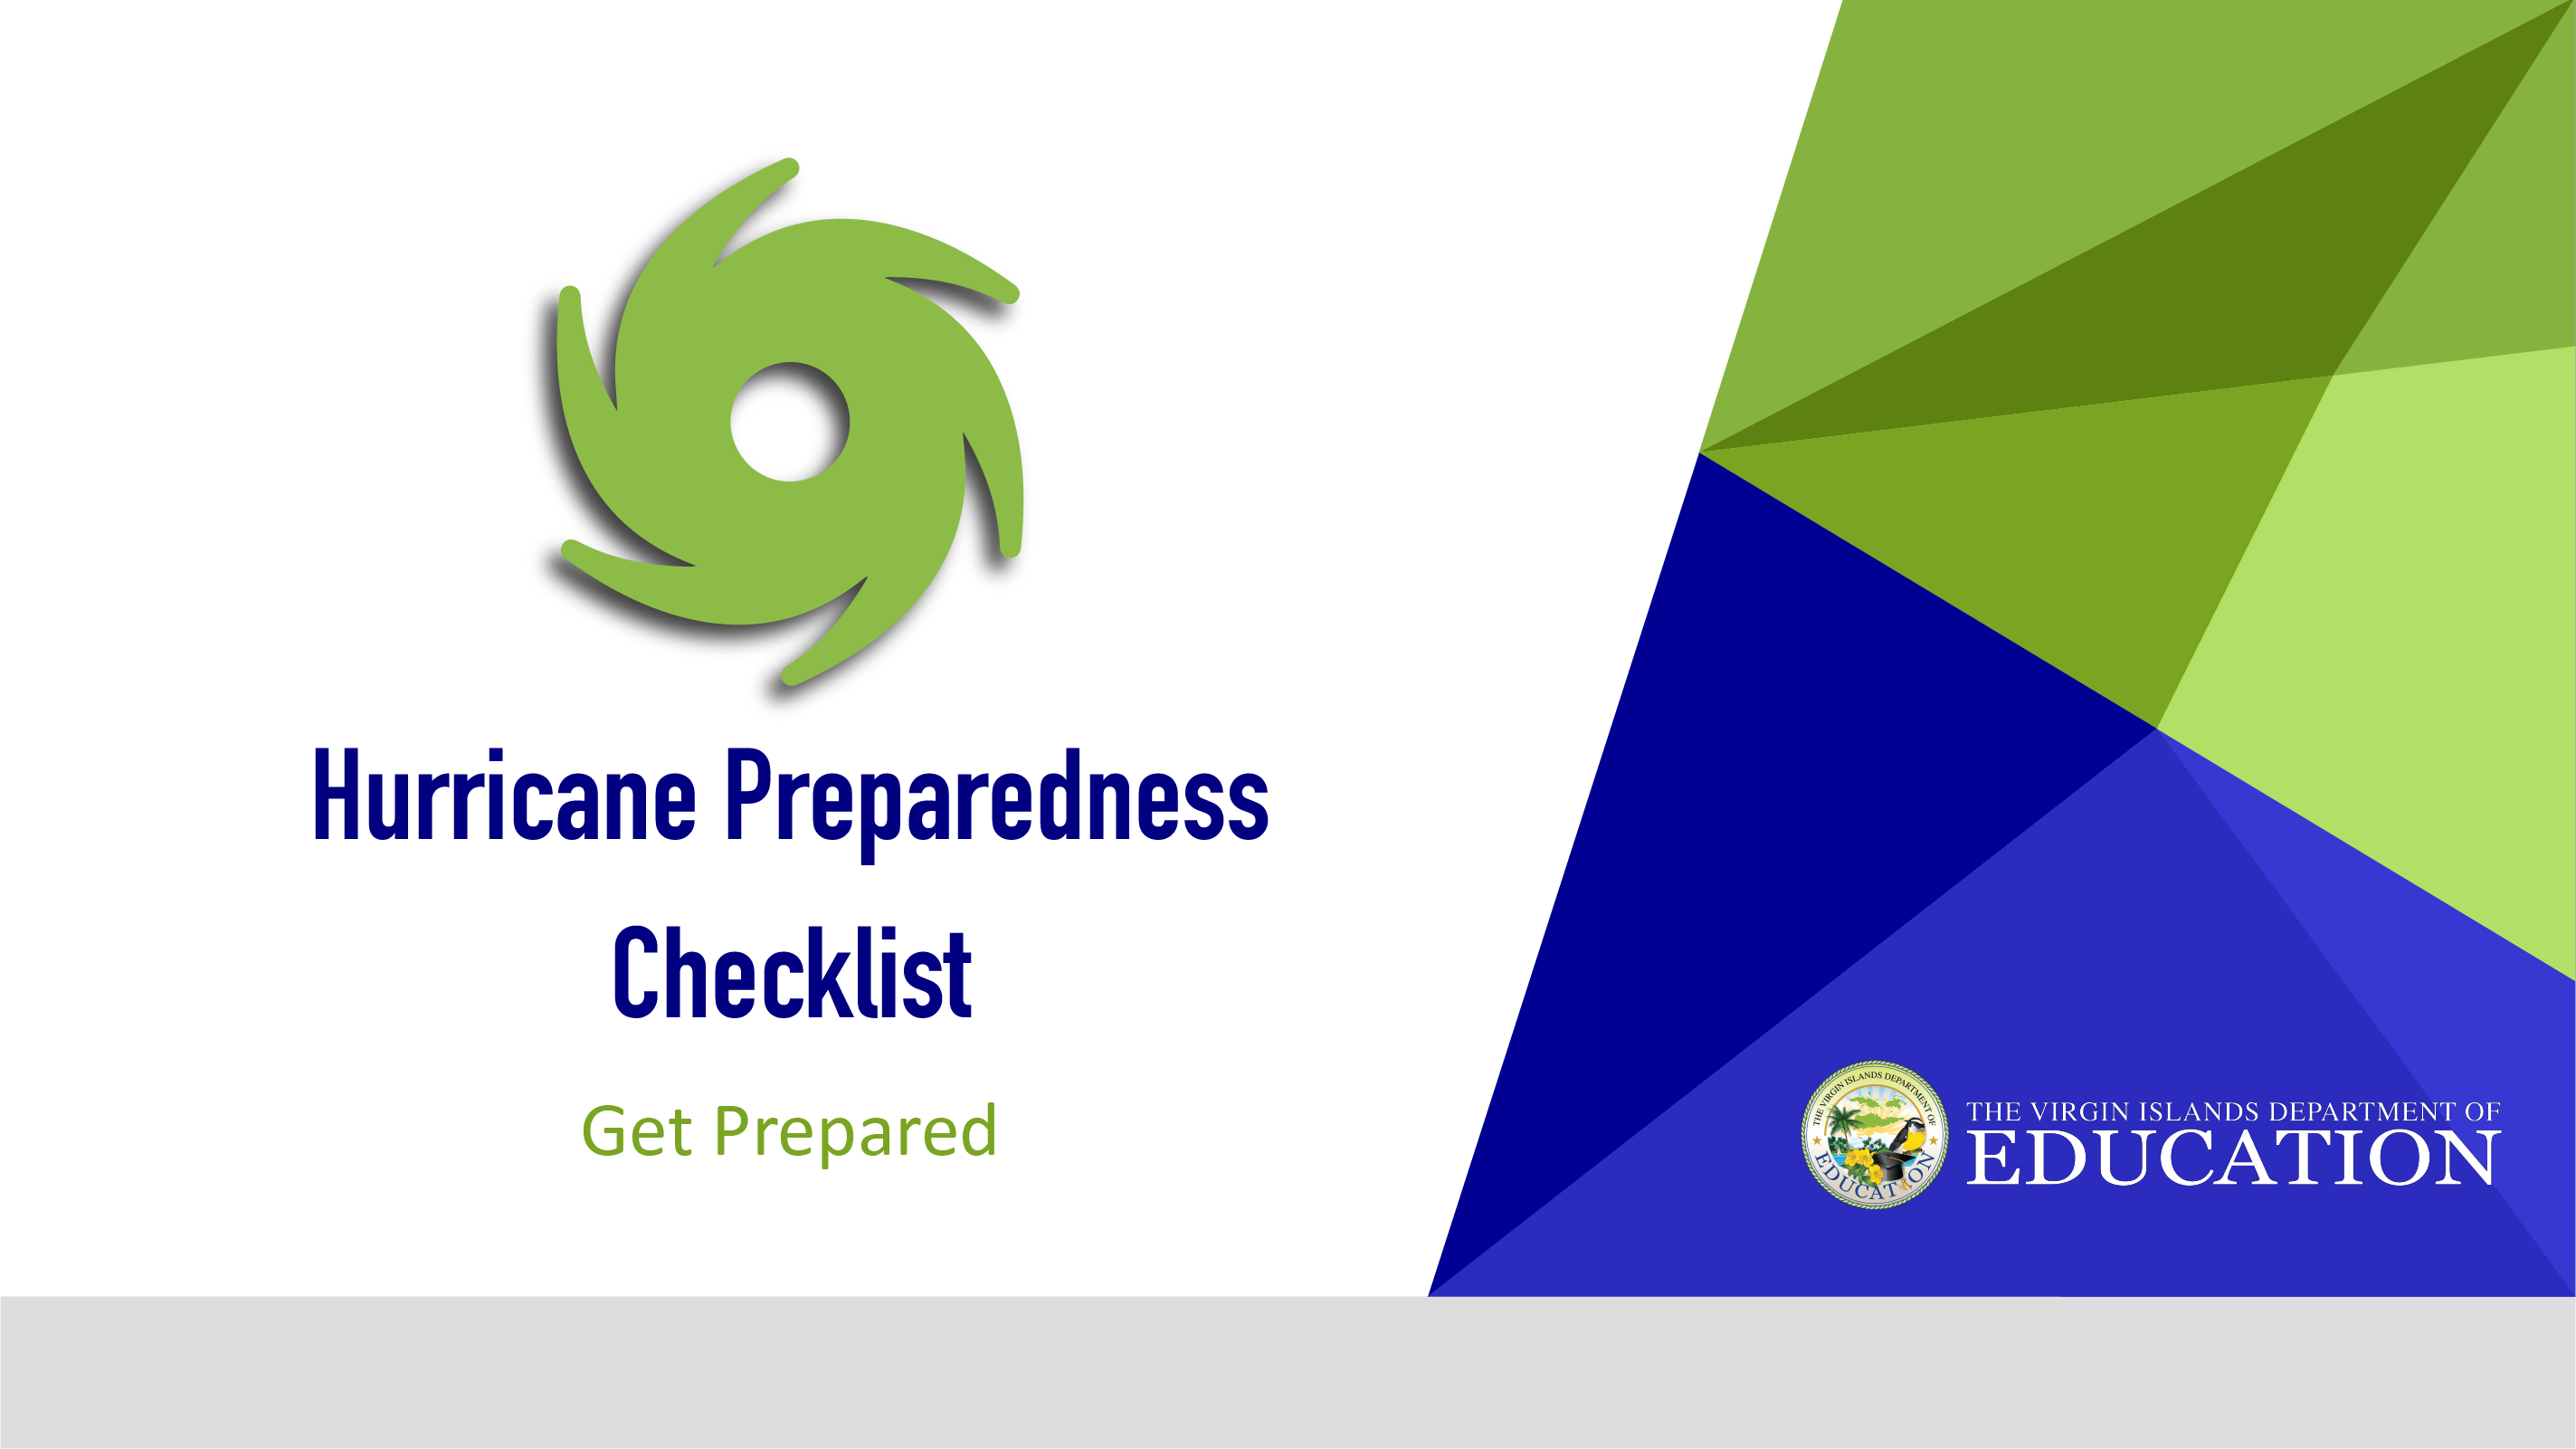 VIDE's Hurricane Preparedness Checklist